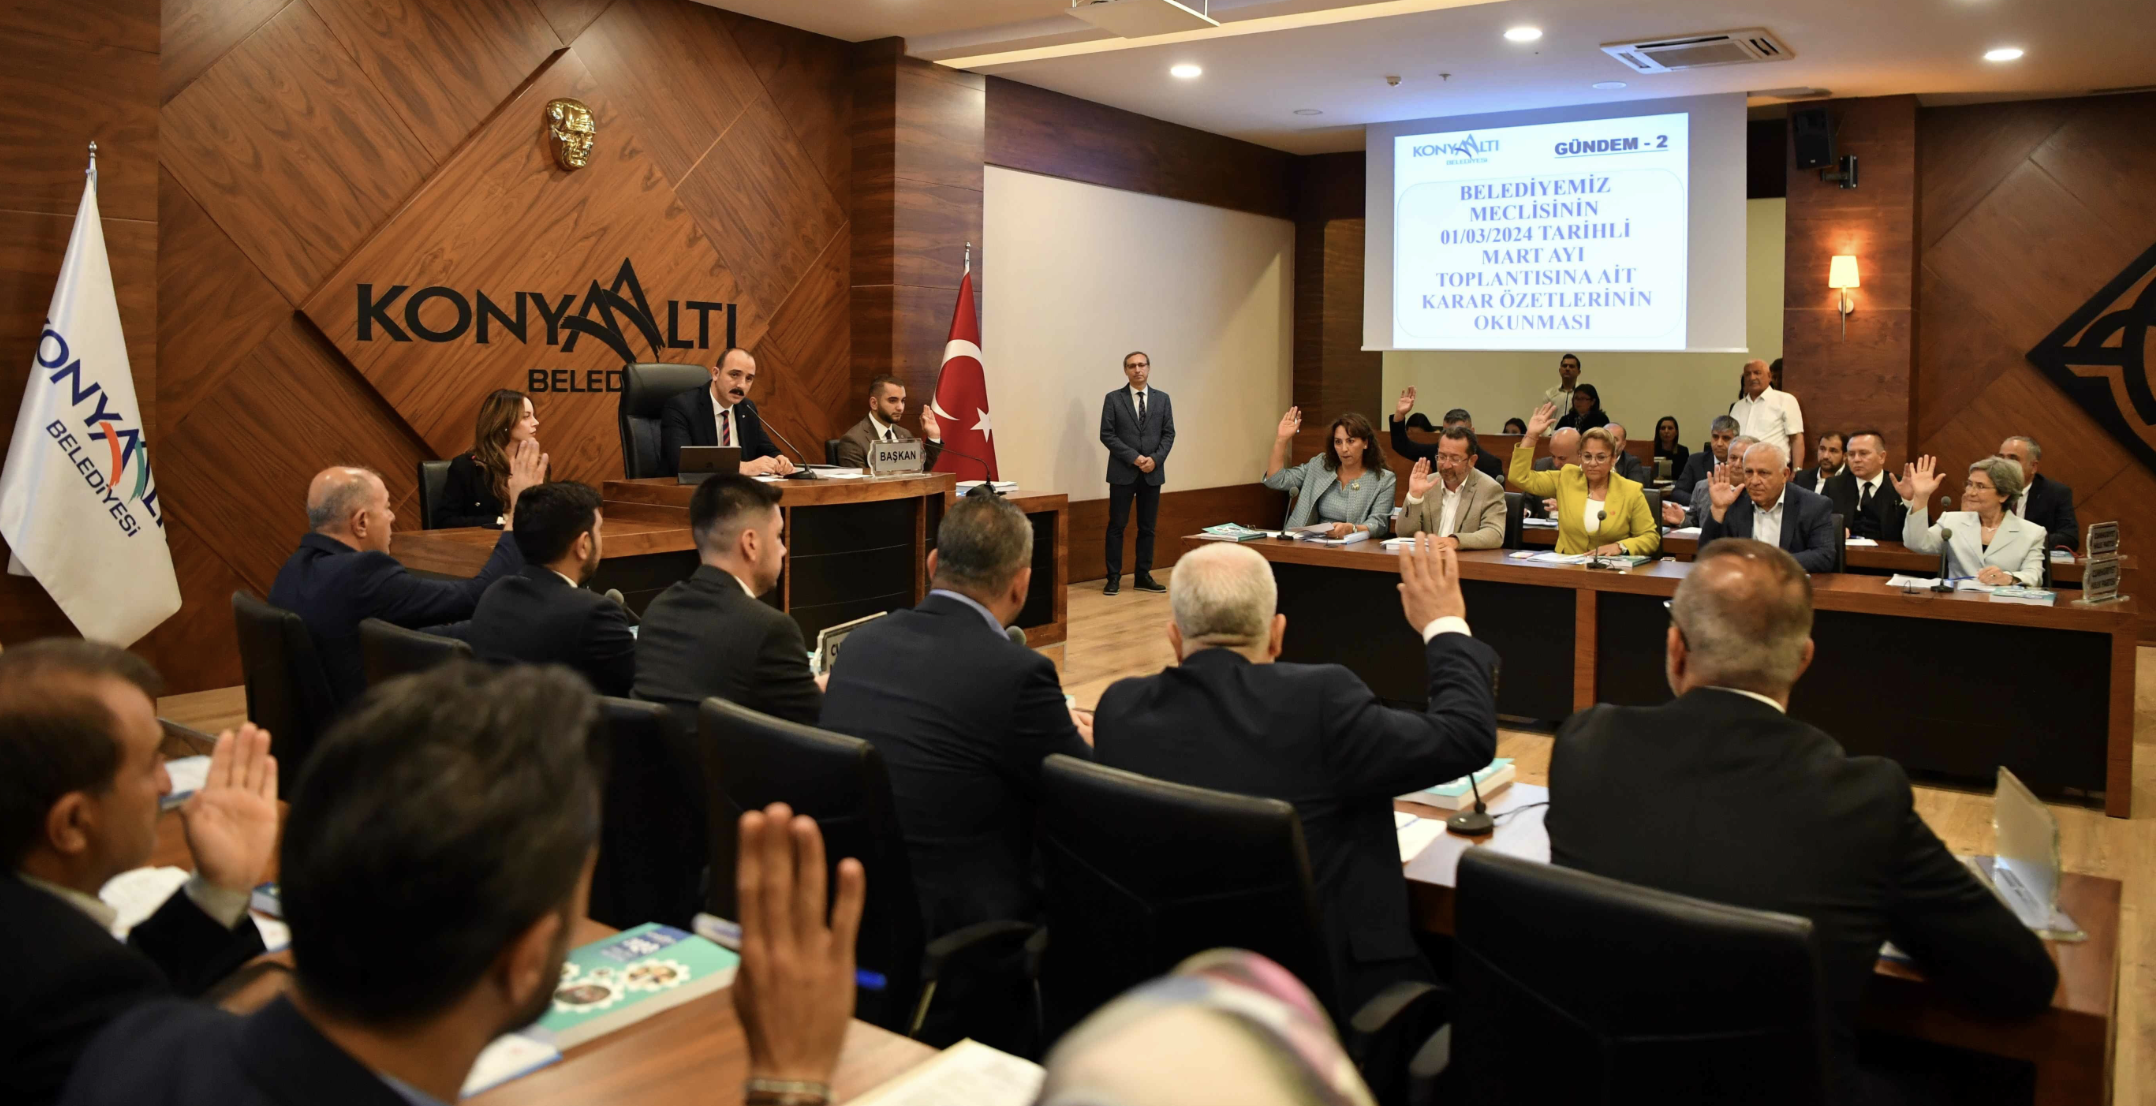 Konyaaltı Belediyesi'nde yılın ilk meclisi toplandı: Meclis üyeleri belirlendi